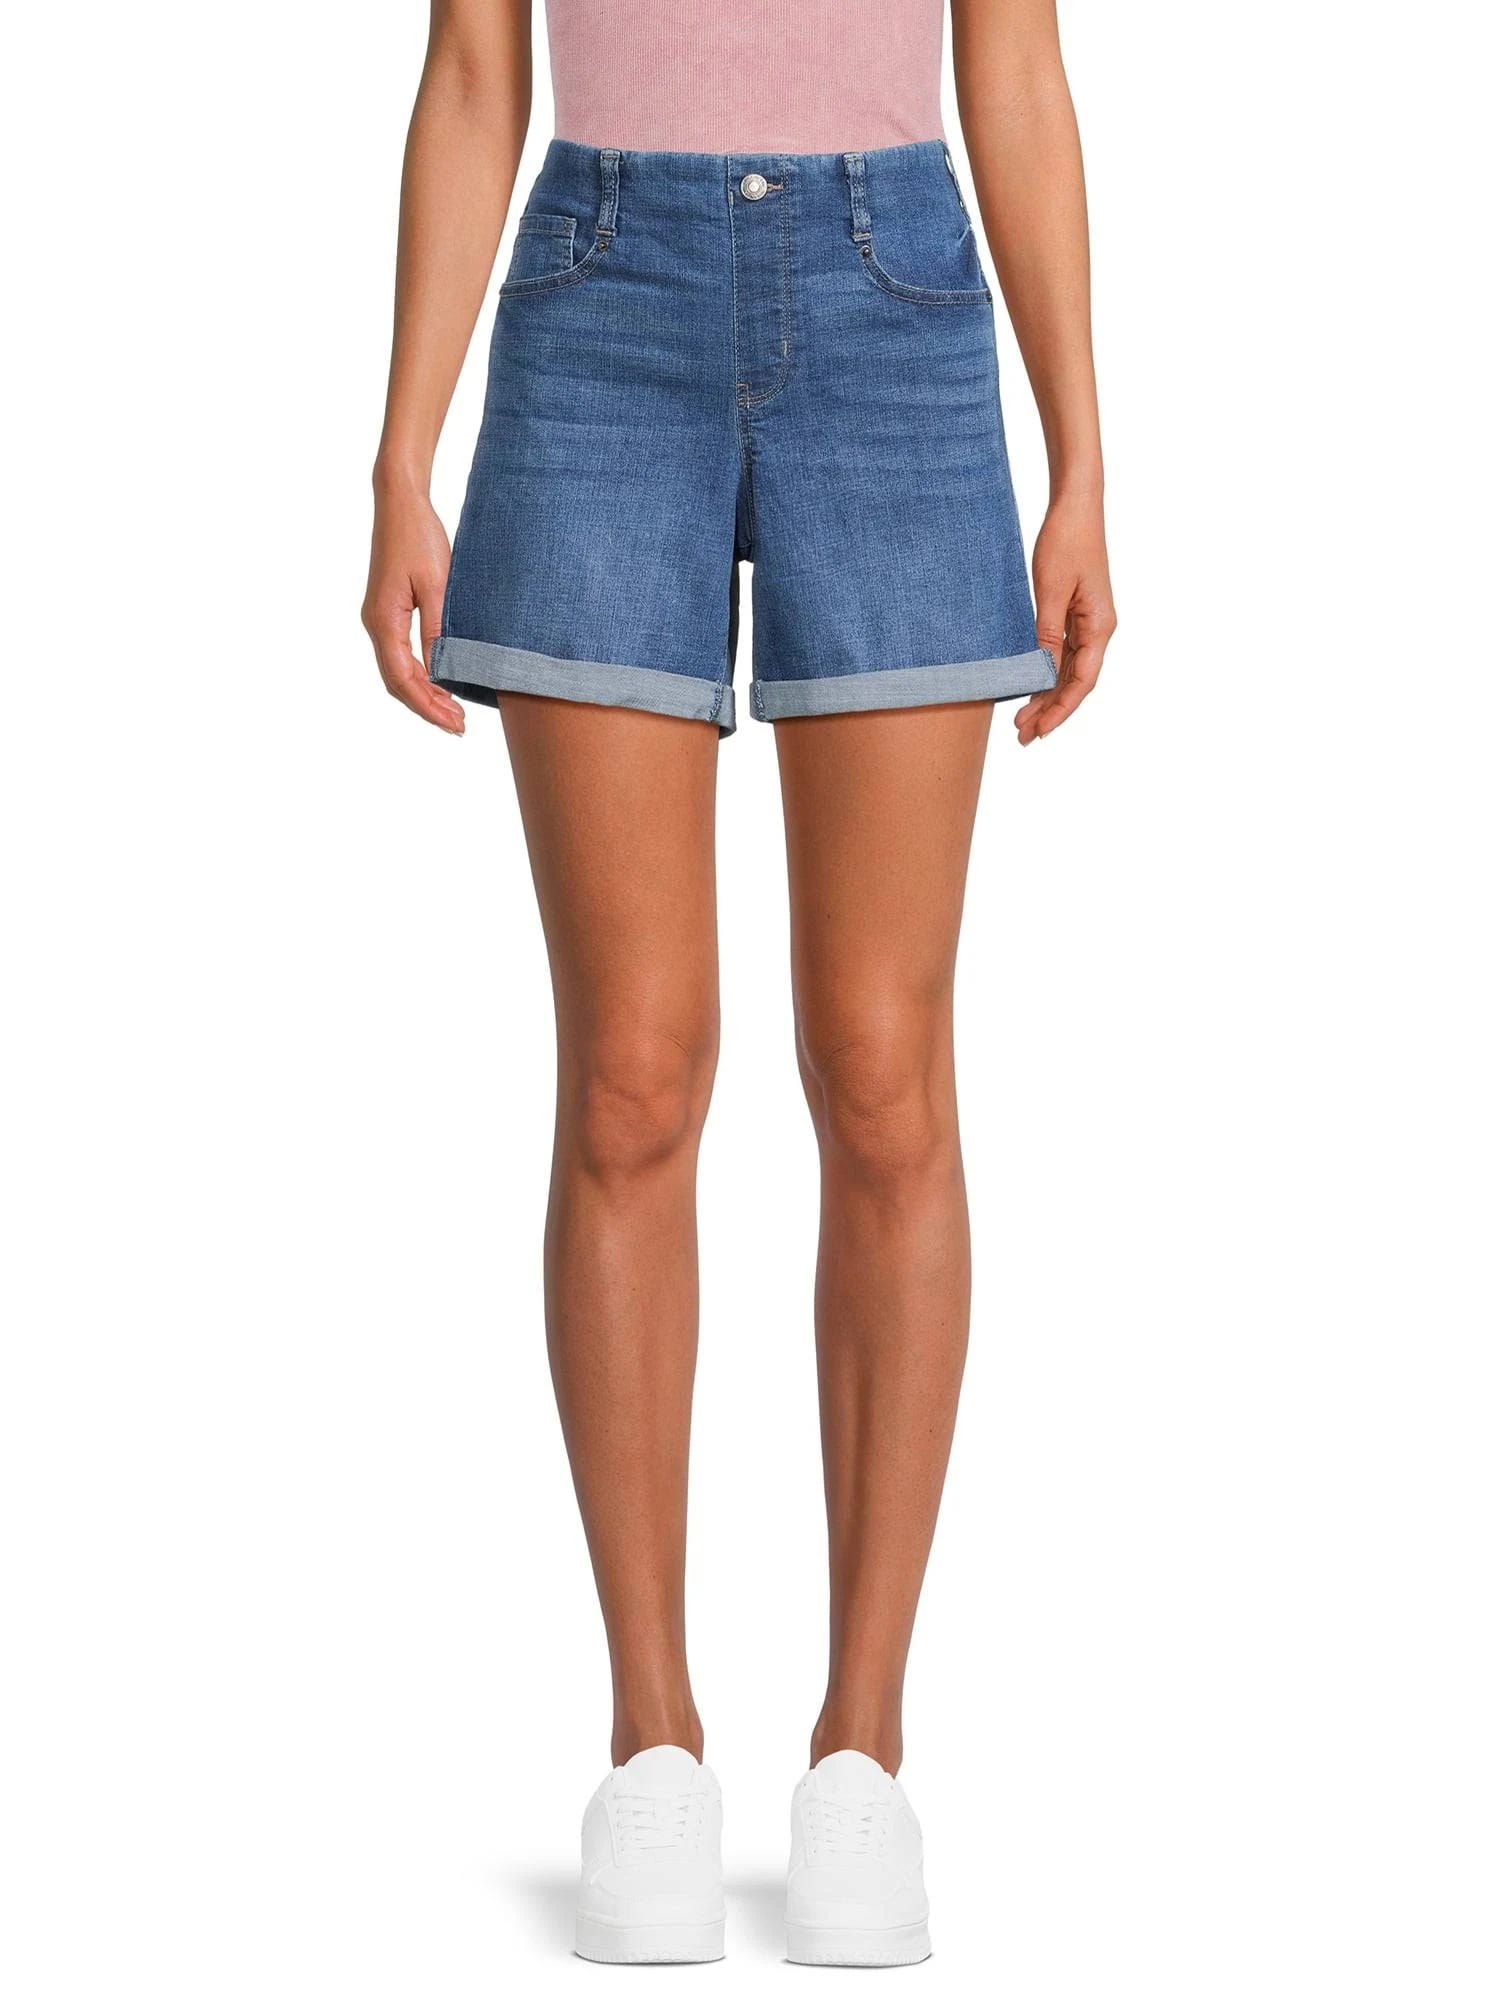 Affordable Stylish Blue Shorts for Women | Image